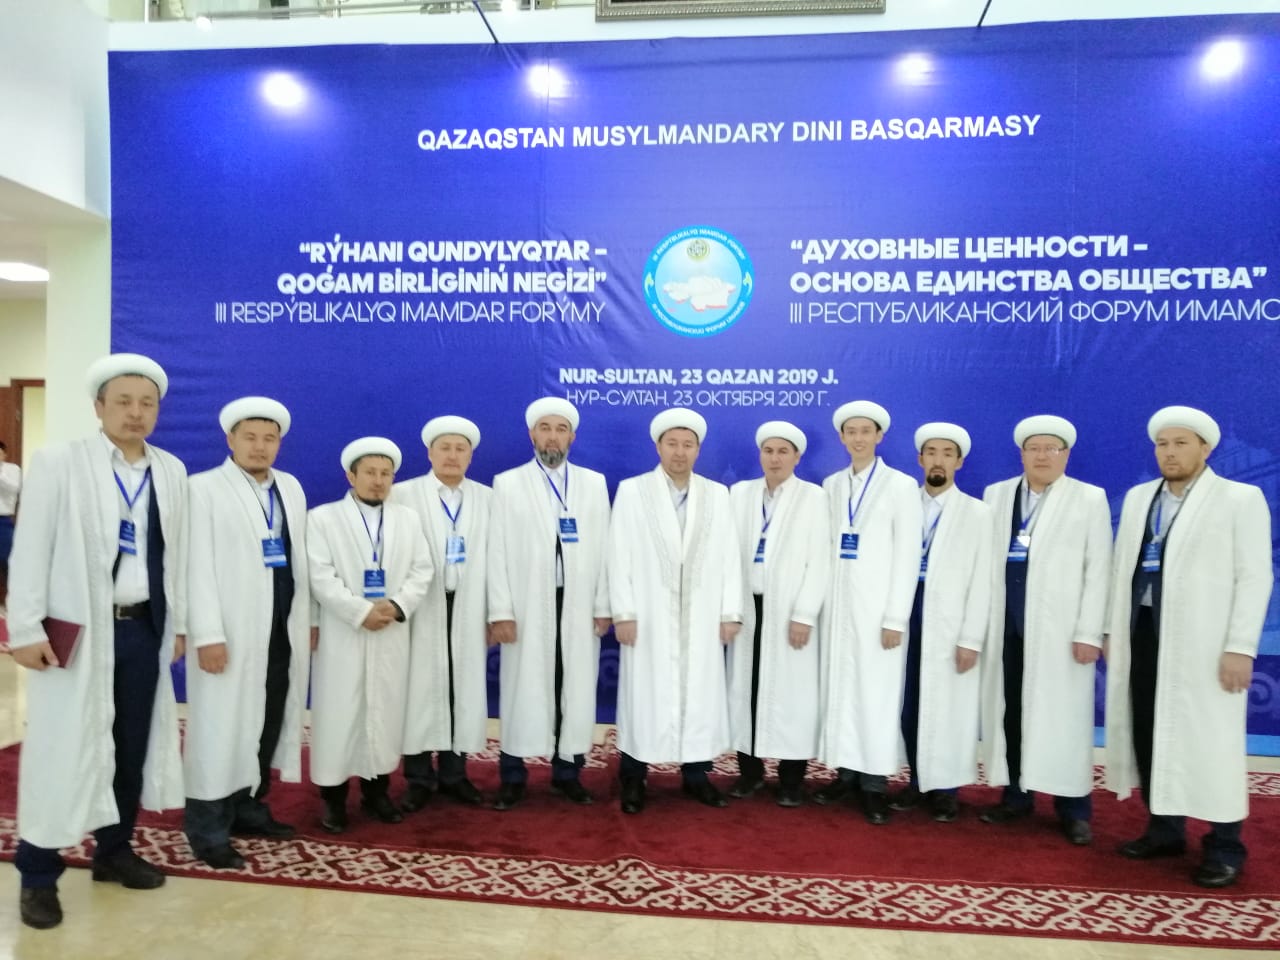 СҚО имамдары делегациясы III Республикалық имамдар форумында